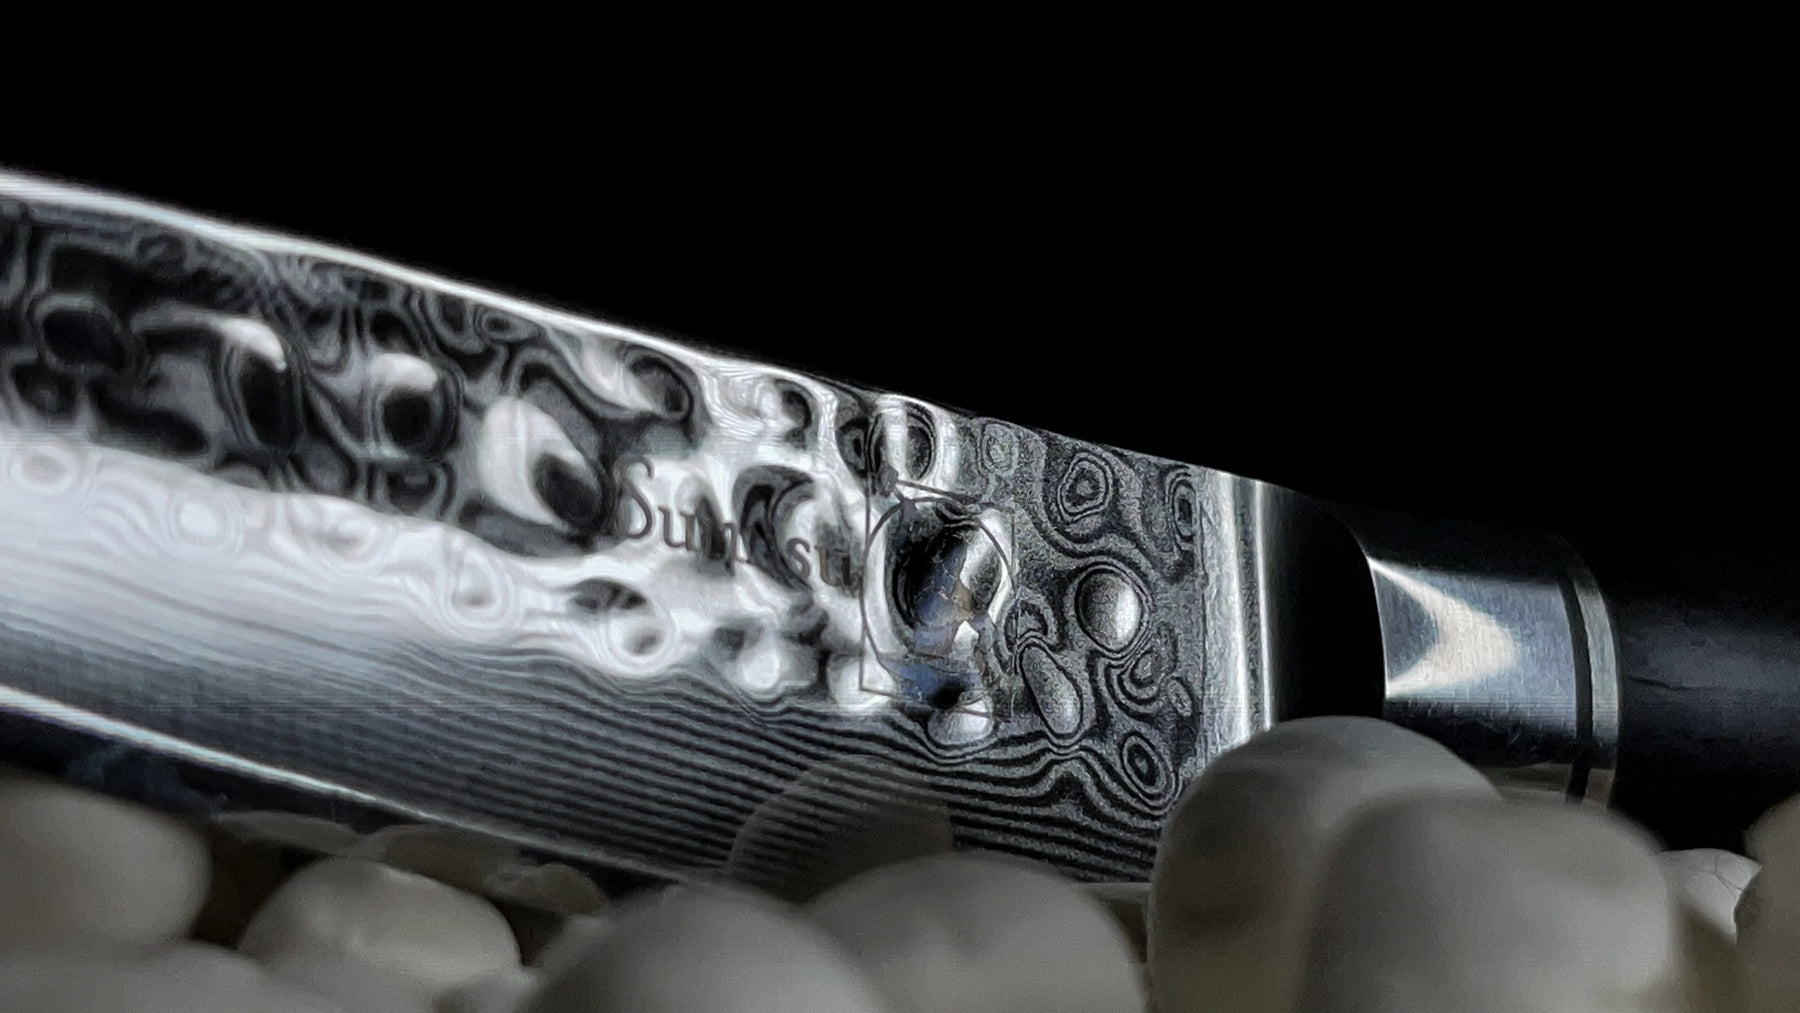 Urtekniv i banket damaskus stål med sort håndtag. Holder sig skarp længe, testvinder til mindre opgaver og japansk kniv inspireret.